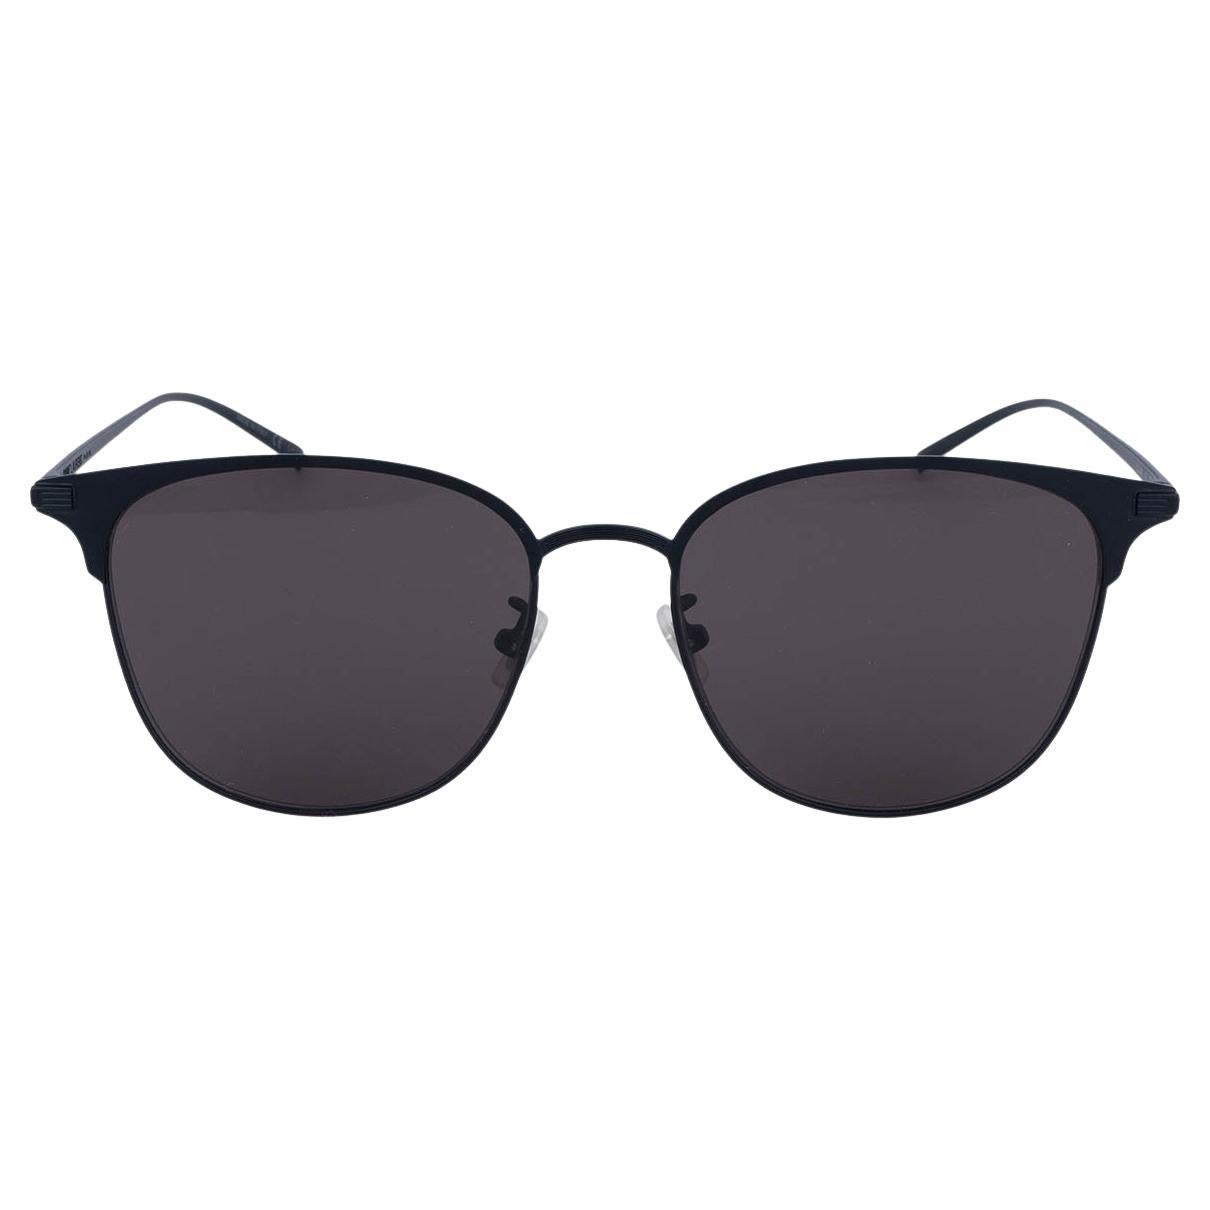 Who makes Saint Laurent sunglasses?